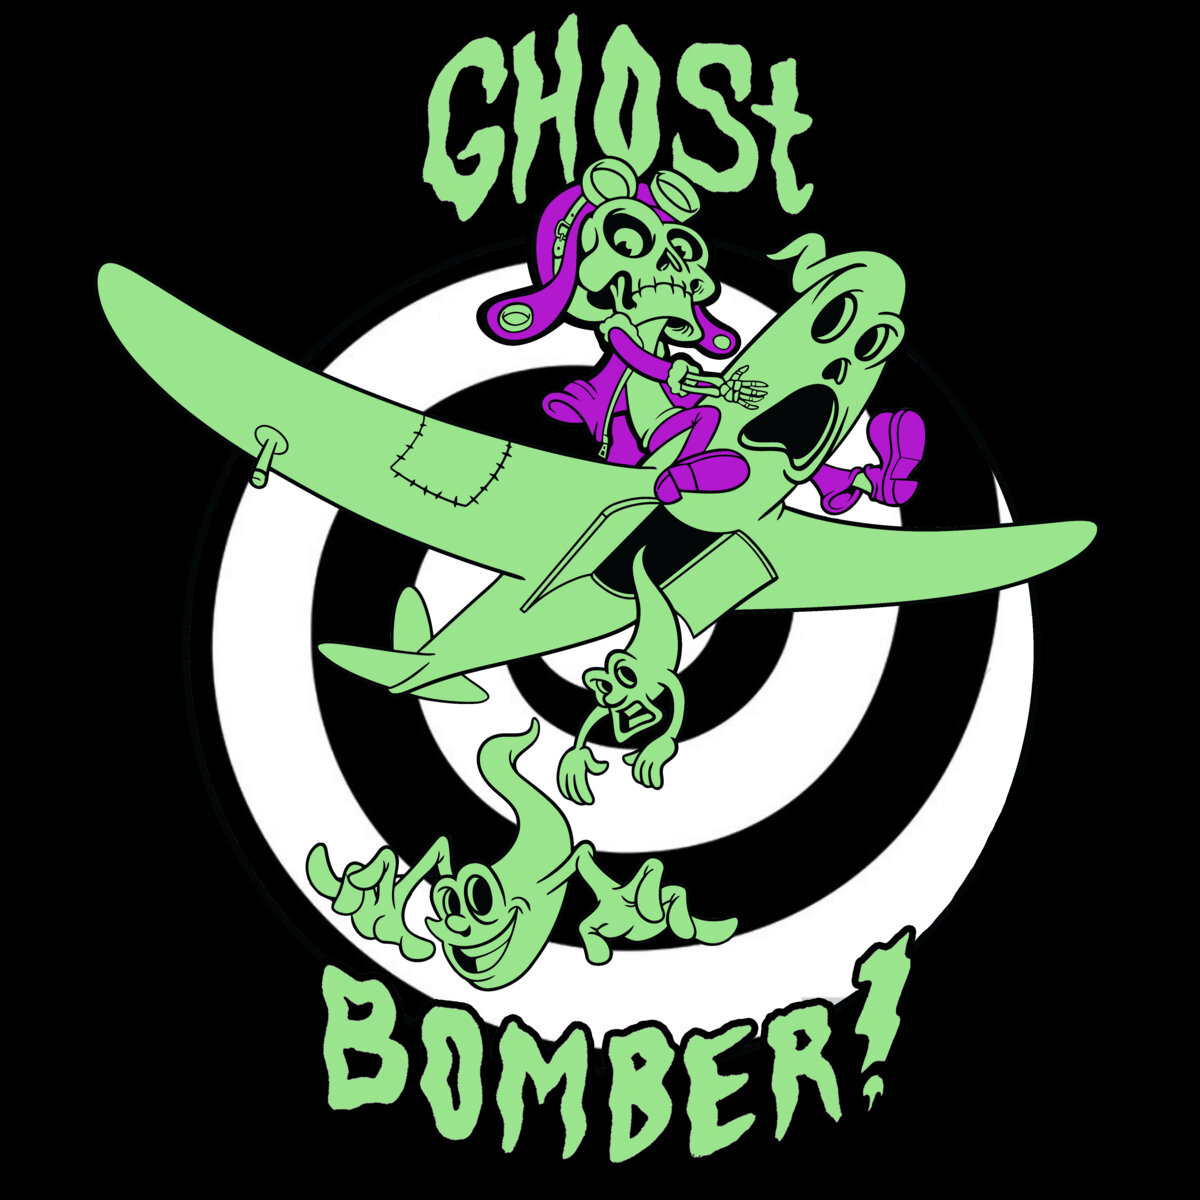 * Ghost Bomber - GHOST BOMBER!